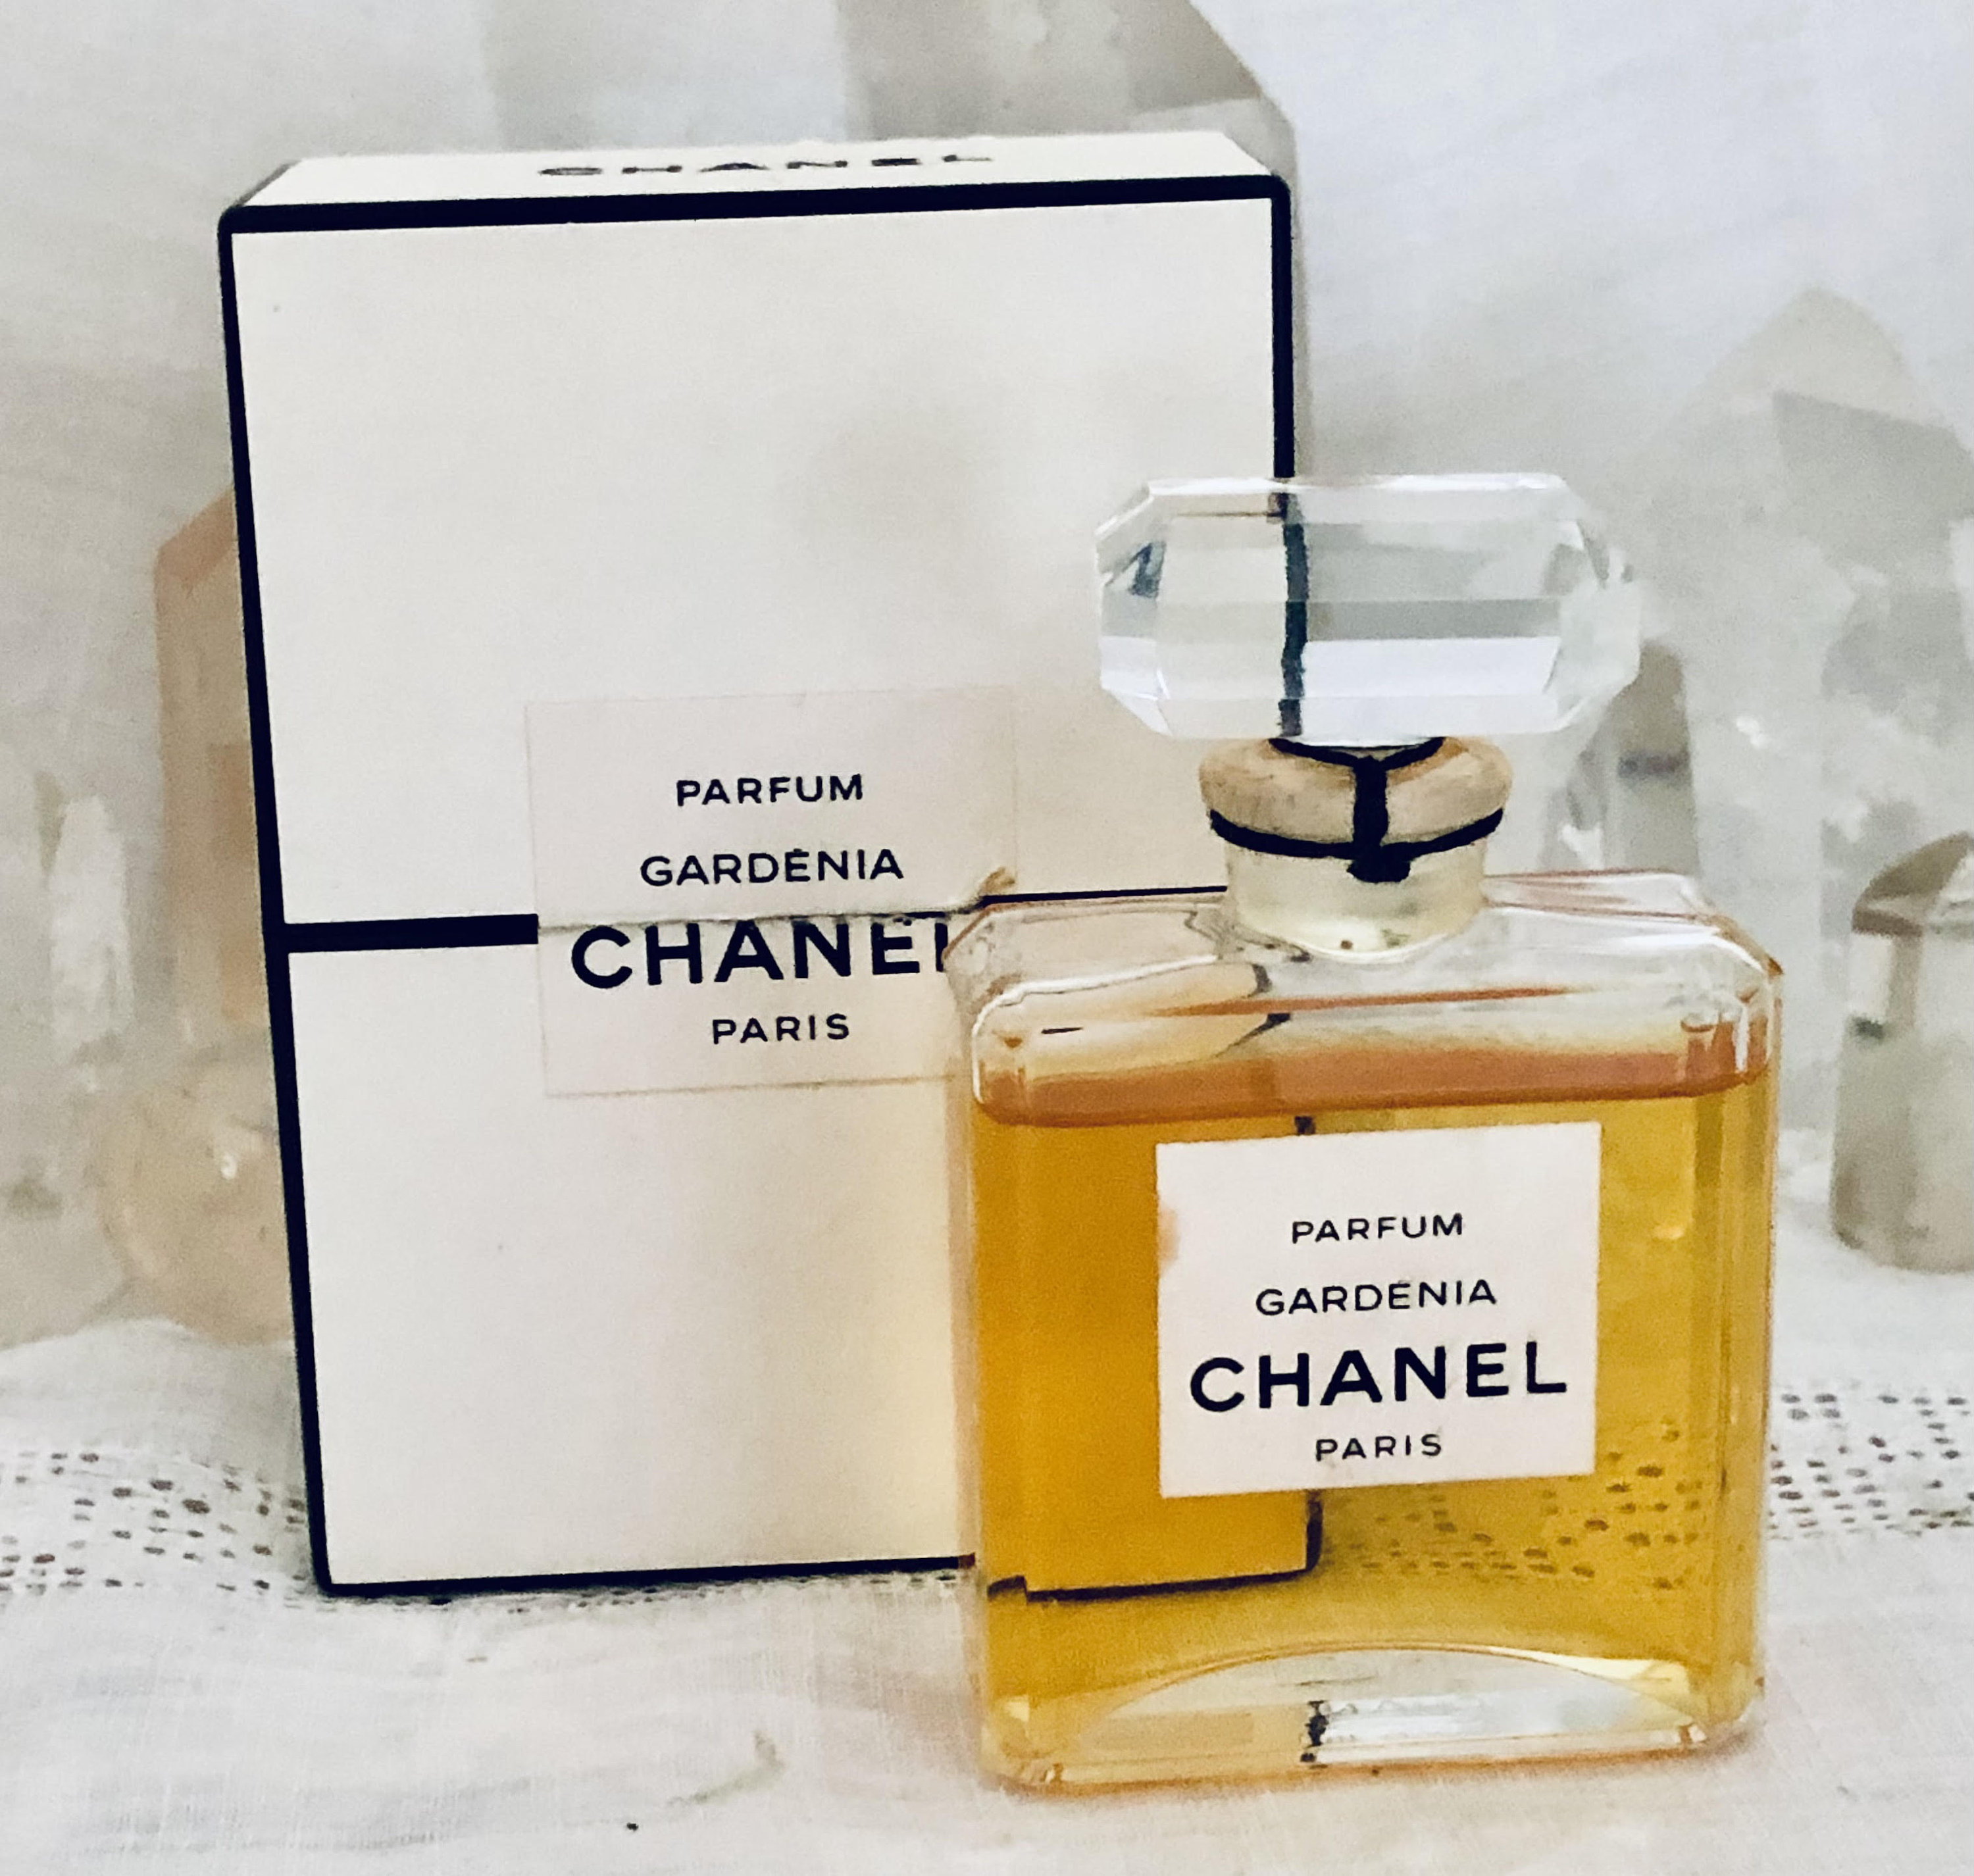 Chanel Gardénia Gardenia 30 Ml. or 1 Oz. Flacon Parfum -  Denmark